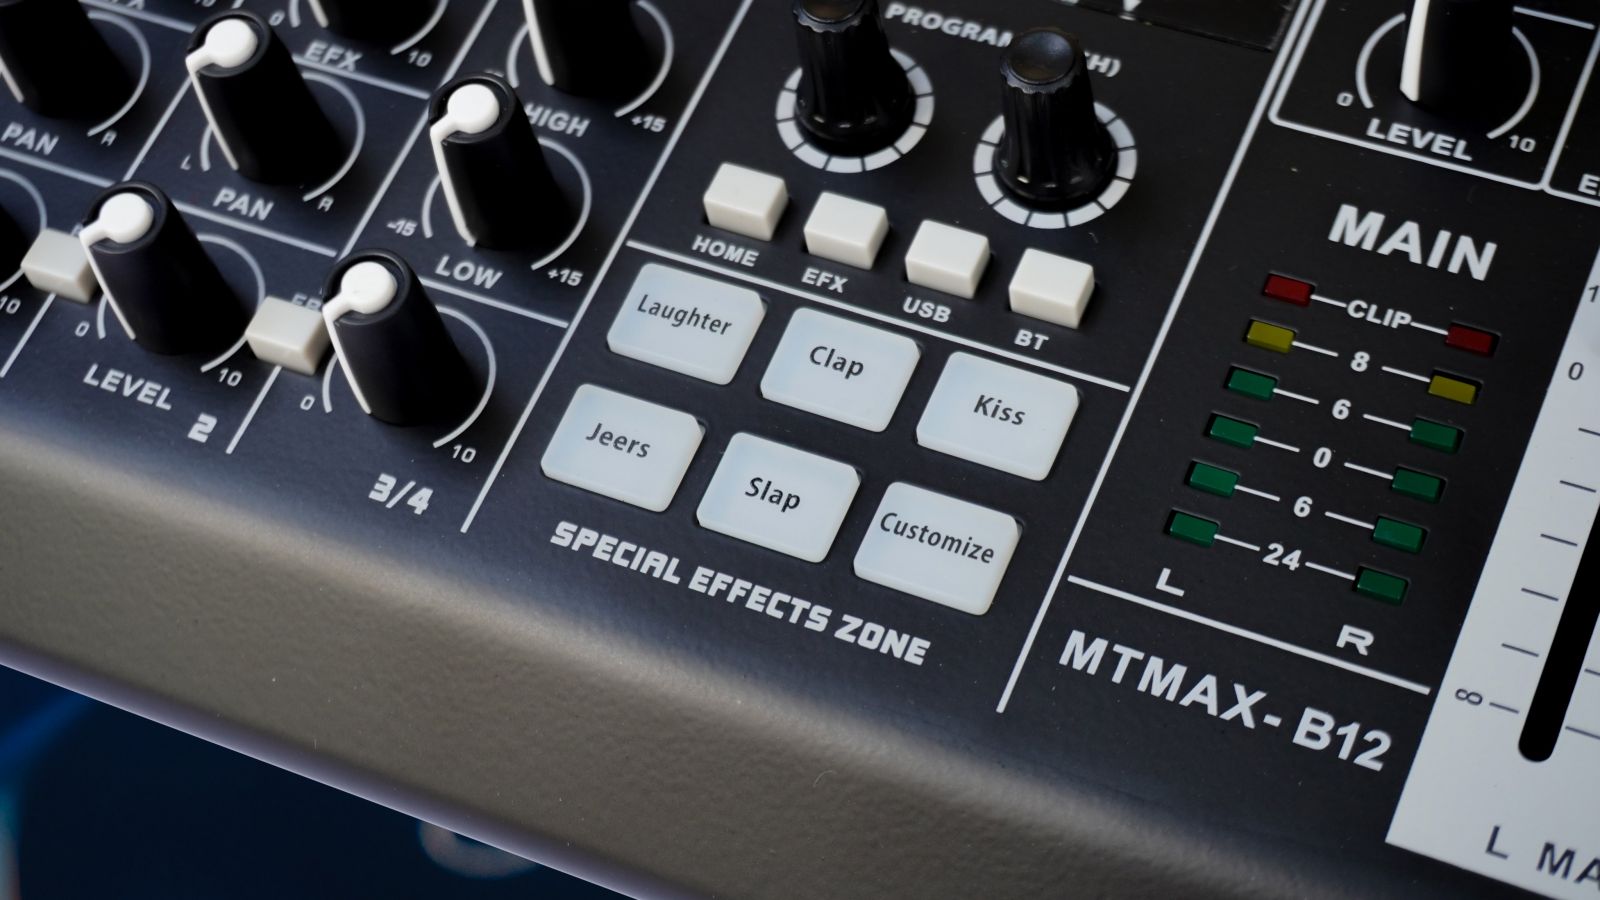 Bàn trộn âm thanh Mixer MTMax B12 - 4 kênh (3 mono, 1 stereo) -Có hiệu ứng âm thanh như sound card - 24 hiệu ứng vang số DSP có thể hiệu chỉnh sâu -Có Bluetooth, tích hợp nguồn 48V-Kết nối máy tính, điện thoại thu âm, livestream dễ dàng.